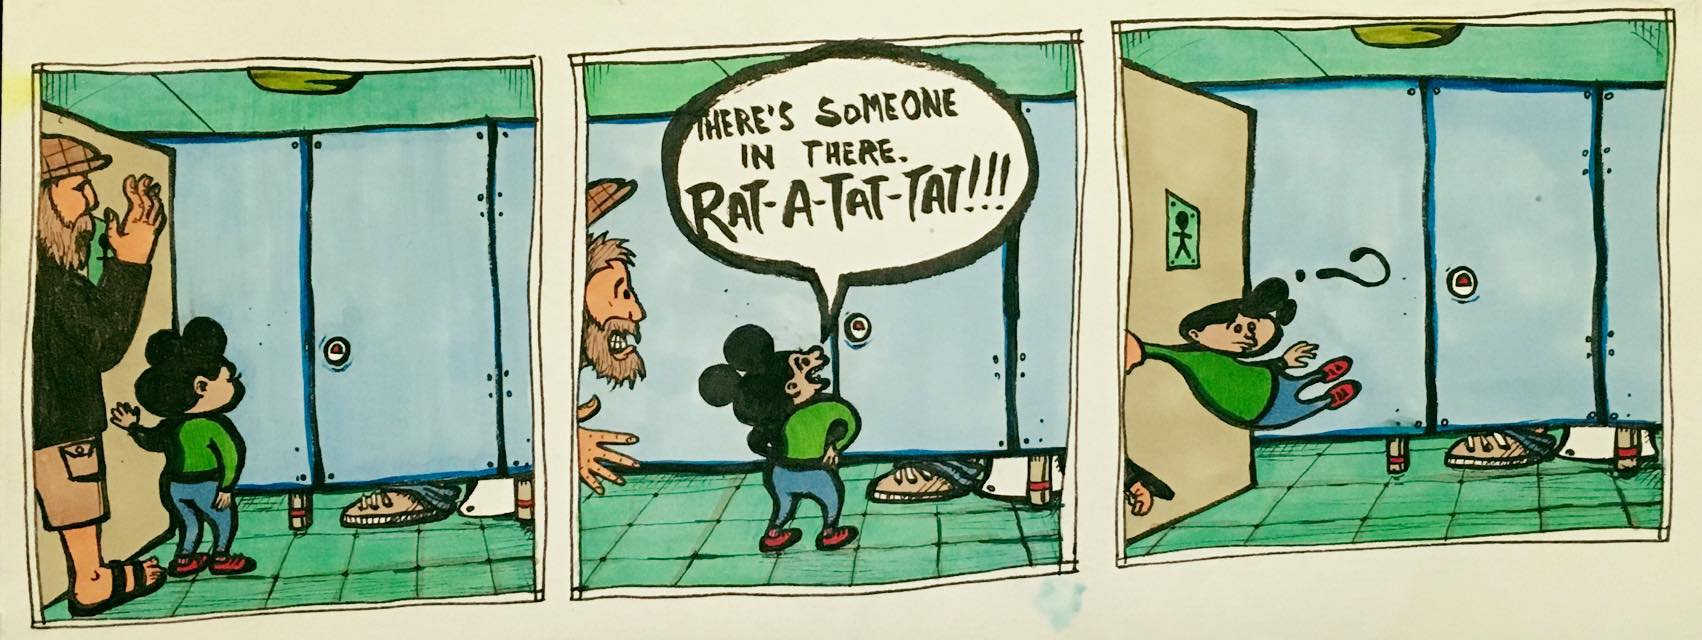 Rat-a-tat-tat!